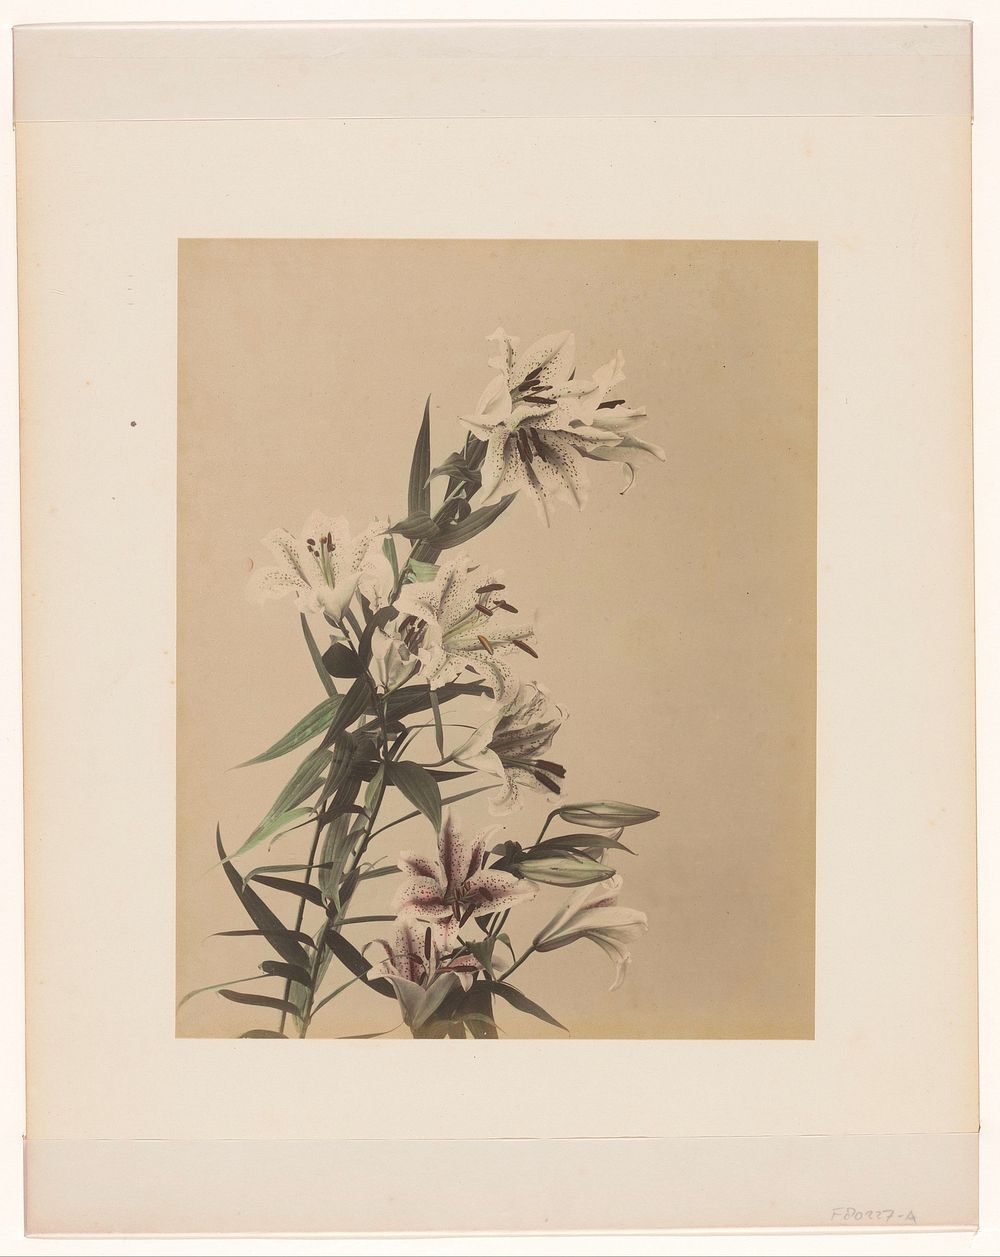 Tijgerlelies (1855 - 1890) by anonymous